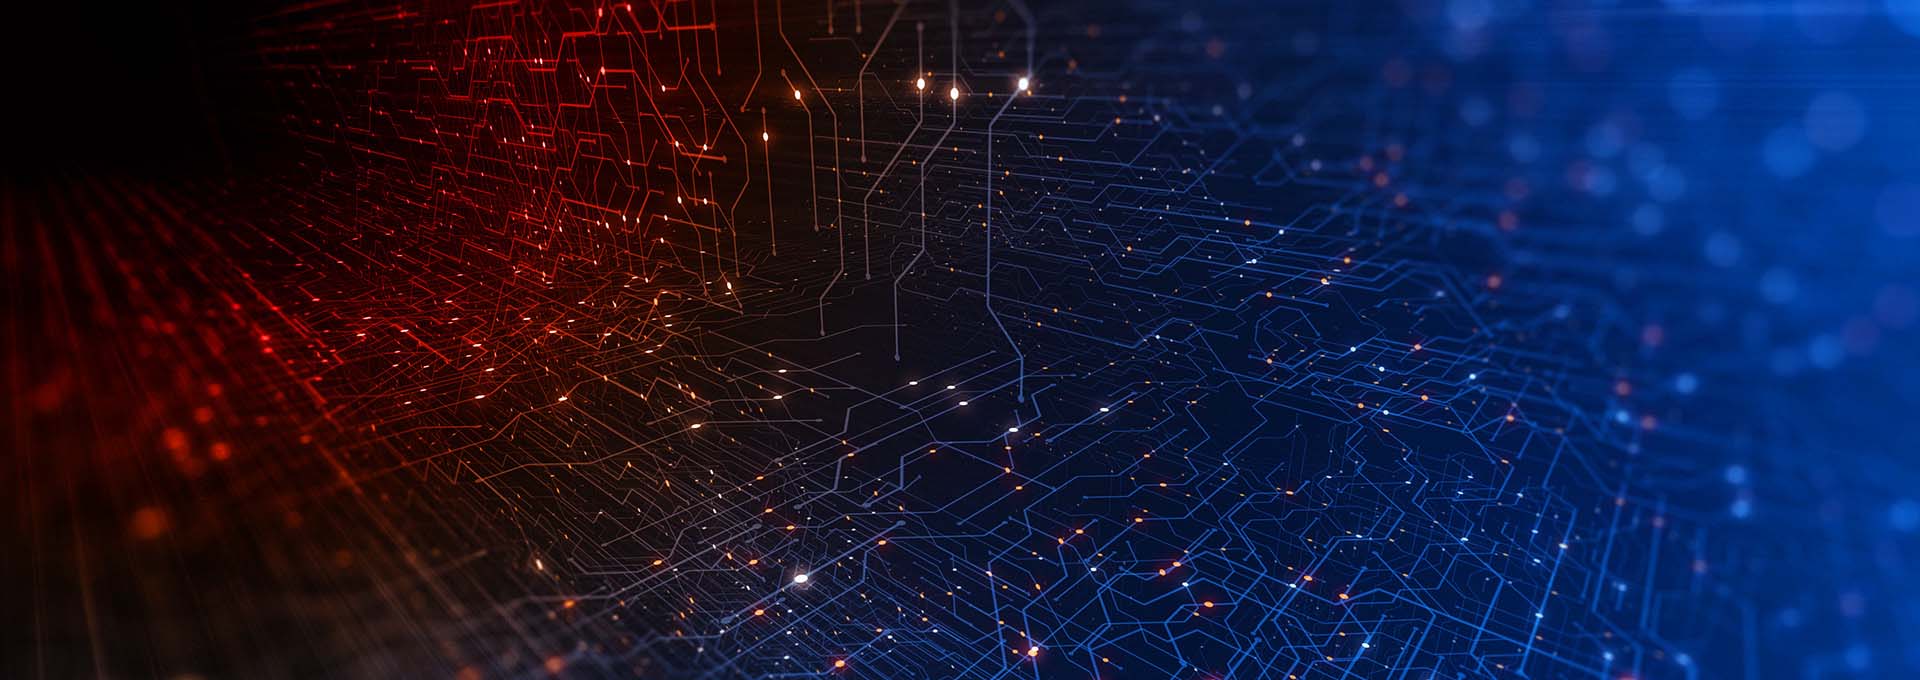 Een netwerk van verbonden stippen verlicht in rood en blauw symboliseert de digitale wereld van onze Oasisnxt Fitting Software